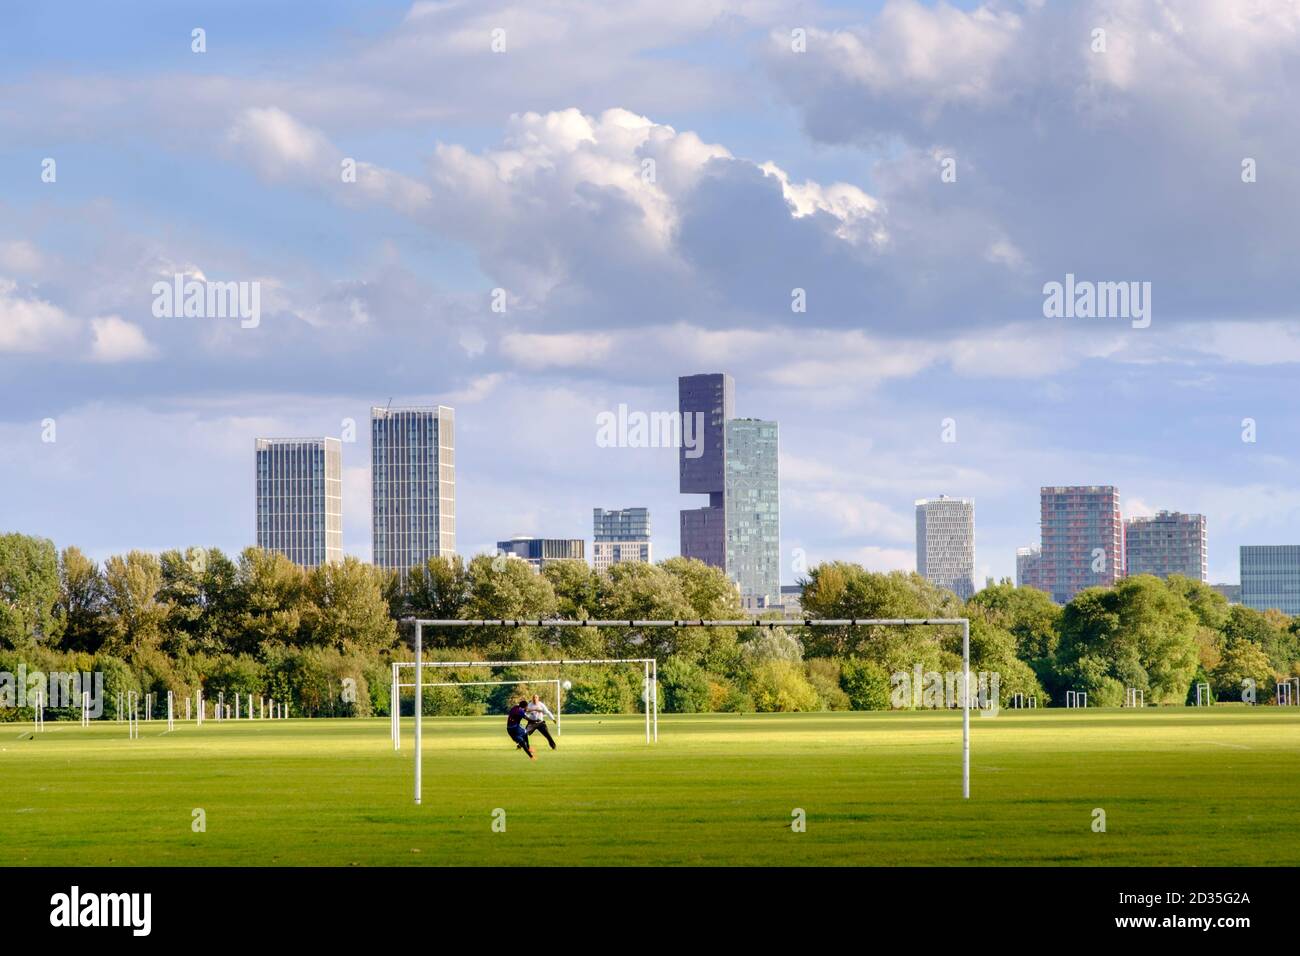 Regno Unito, Londra, Hackney. I calciatori si allenano sui campi da gioco di Hackney Marshes, con i grattacieli di Stratford alle spalle Foto Stock